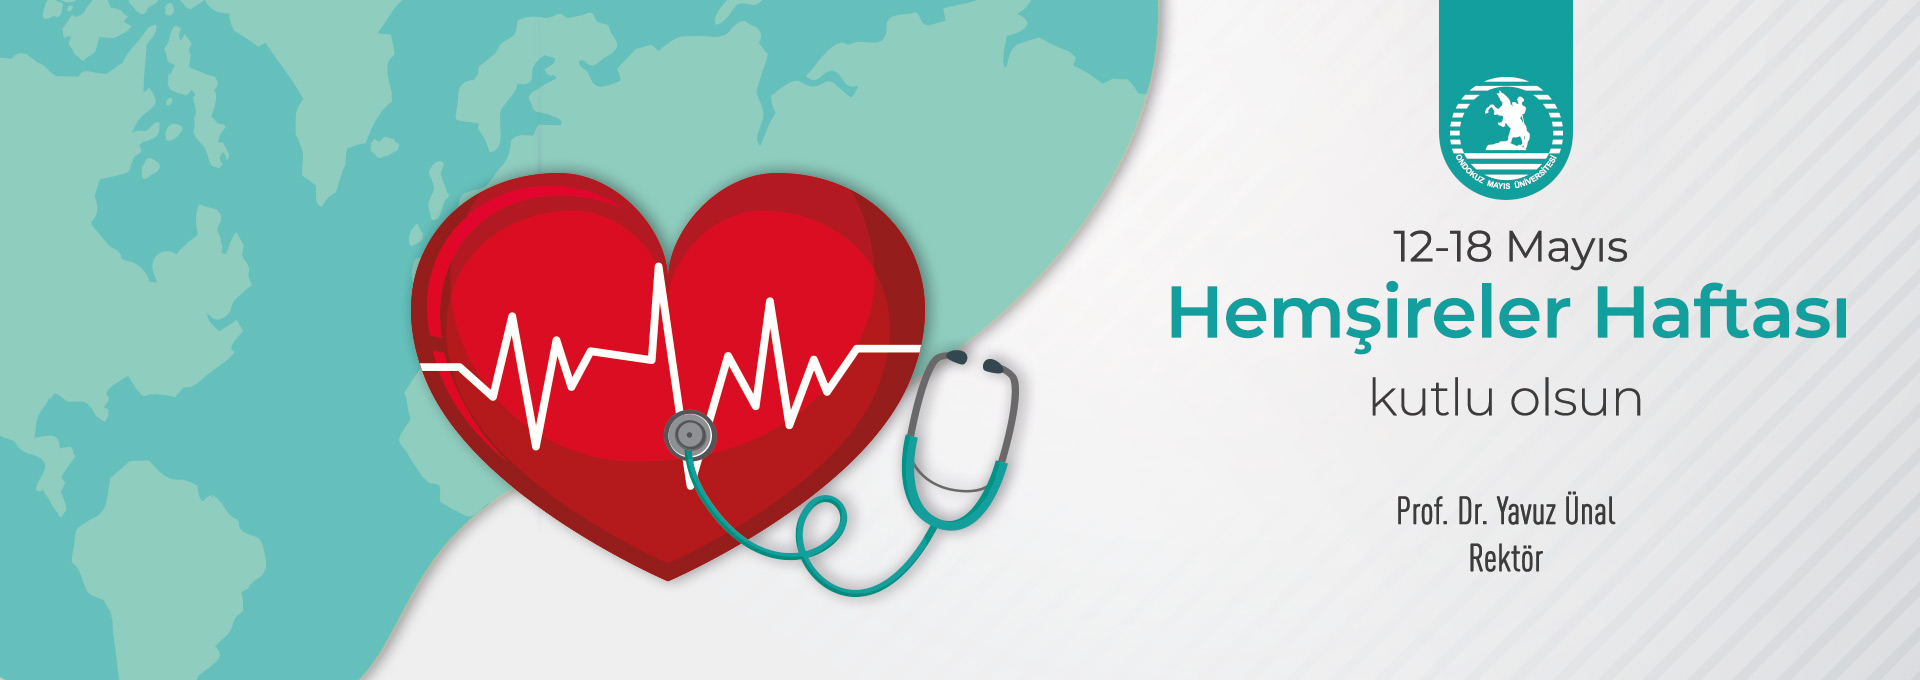 öğrenci kalp sağlığı facebook 1 adım hipertansiyon